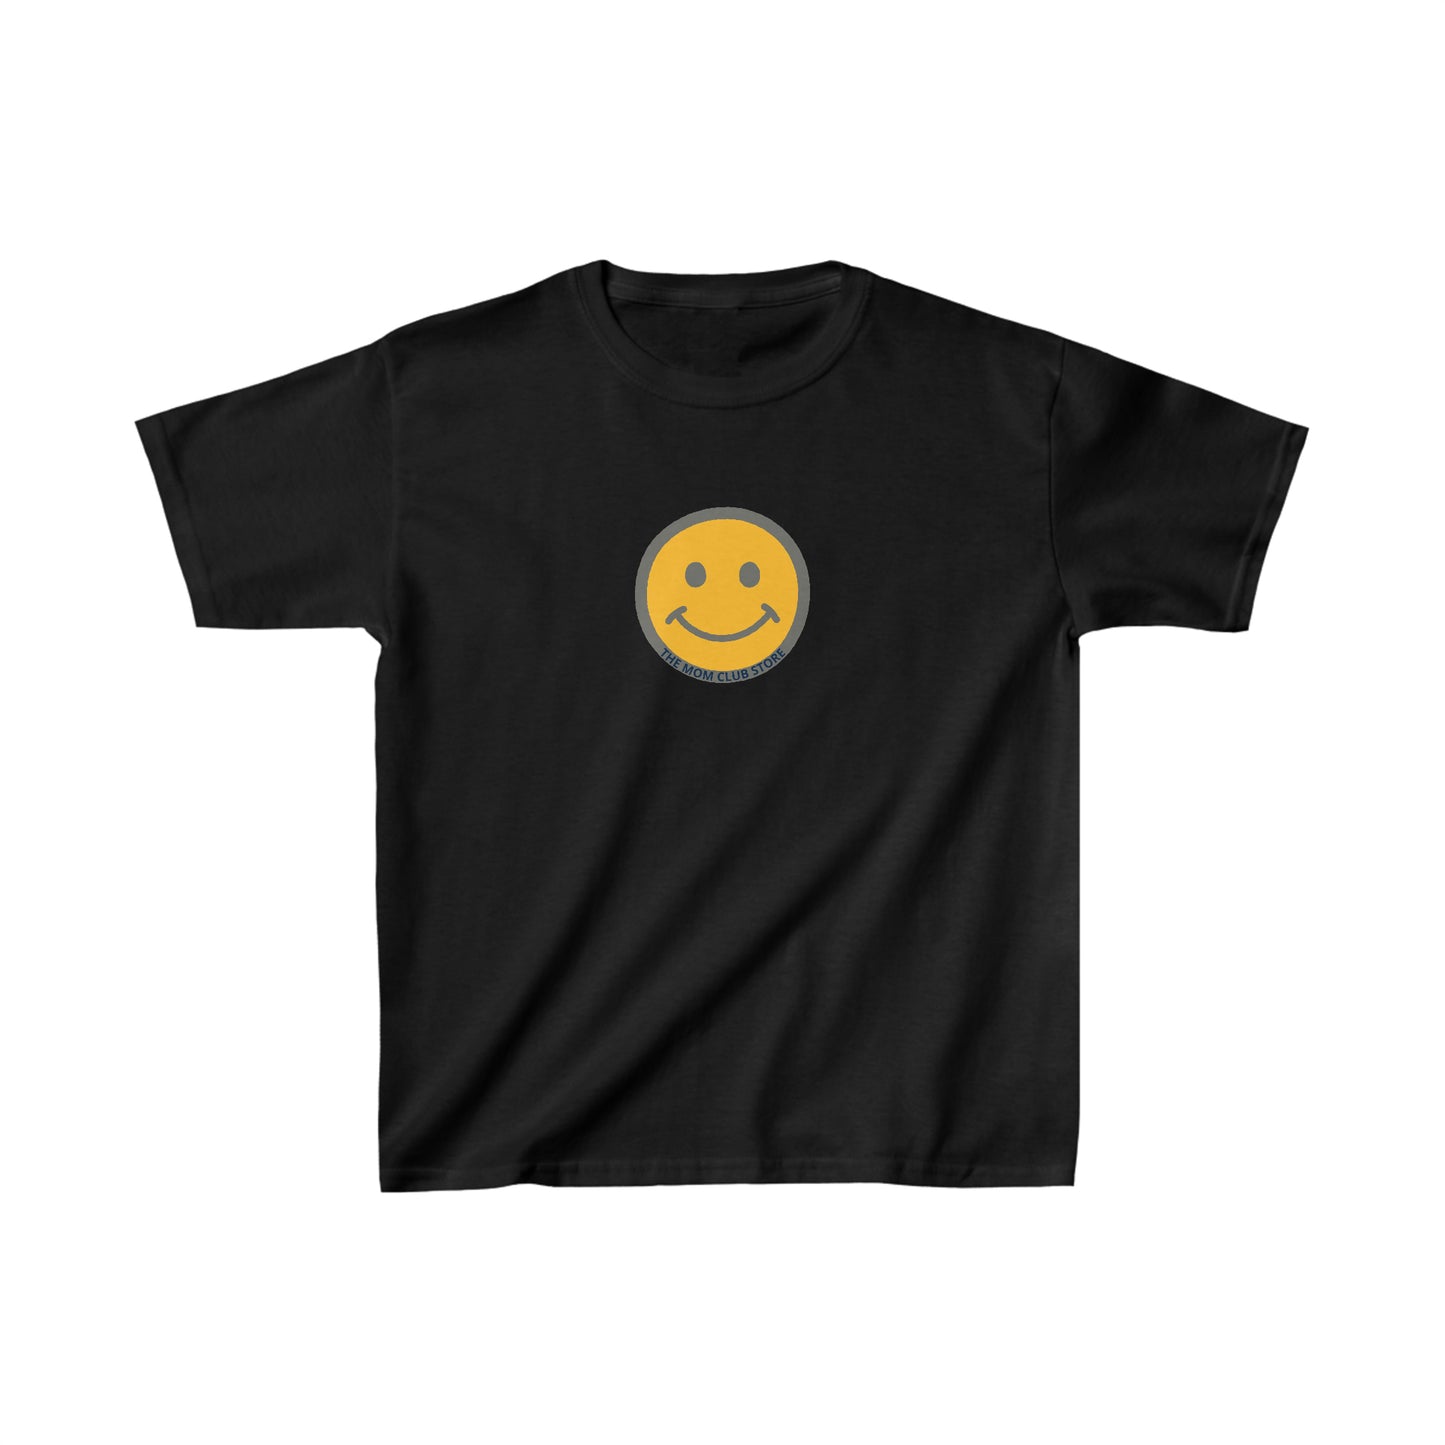 Children's unisex SMILEY print short-sleeved t-shirt